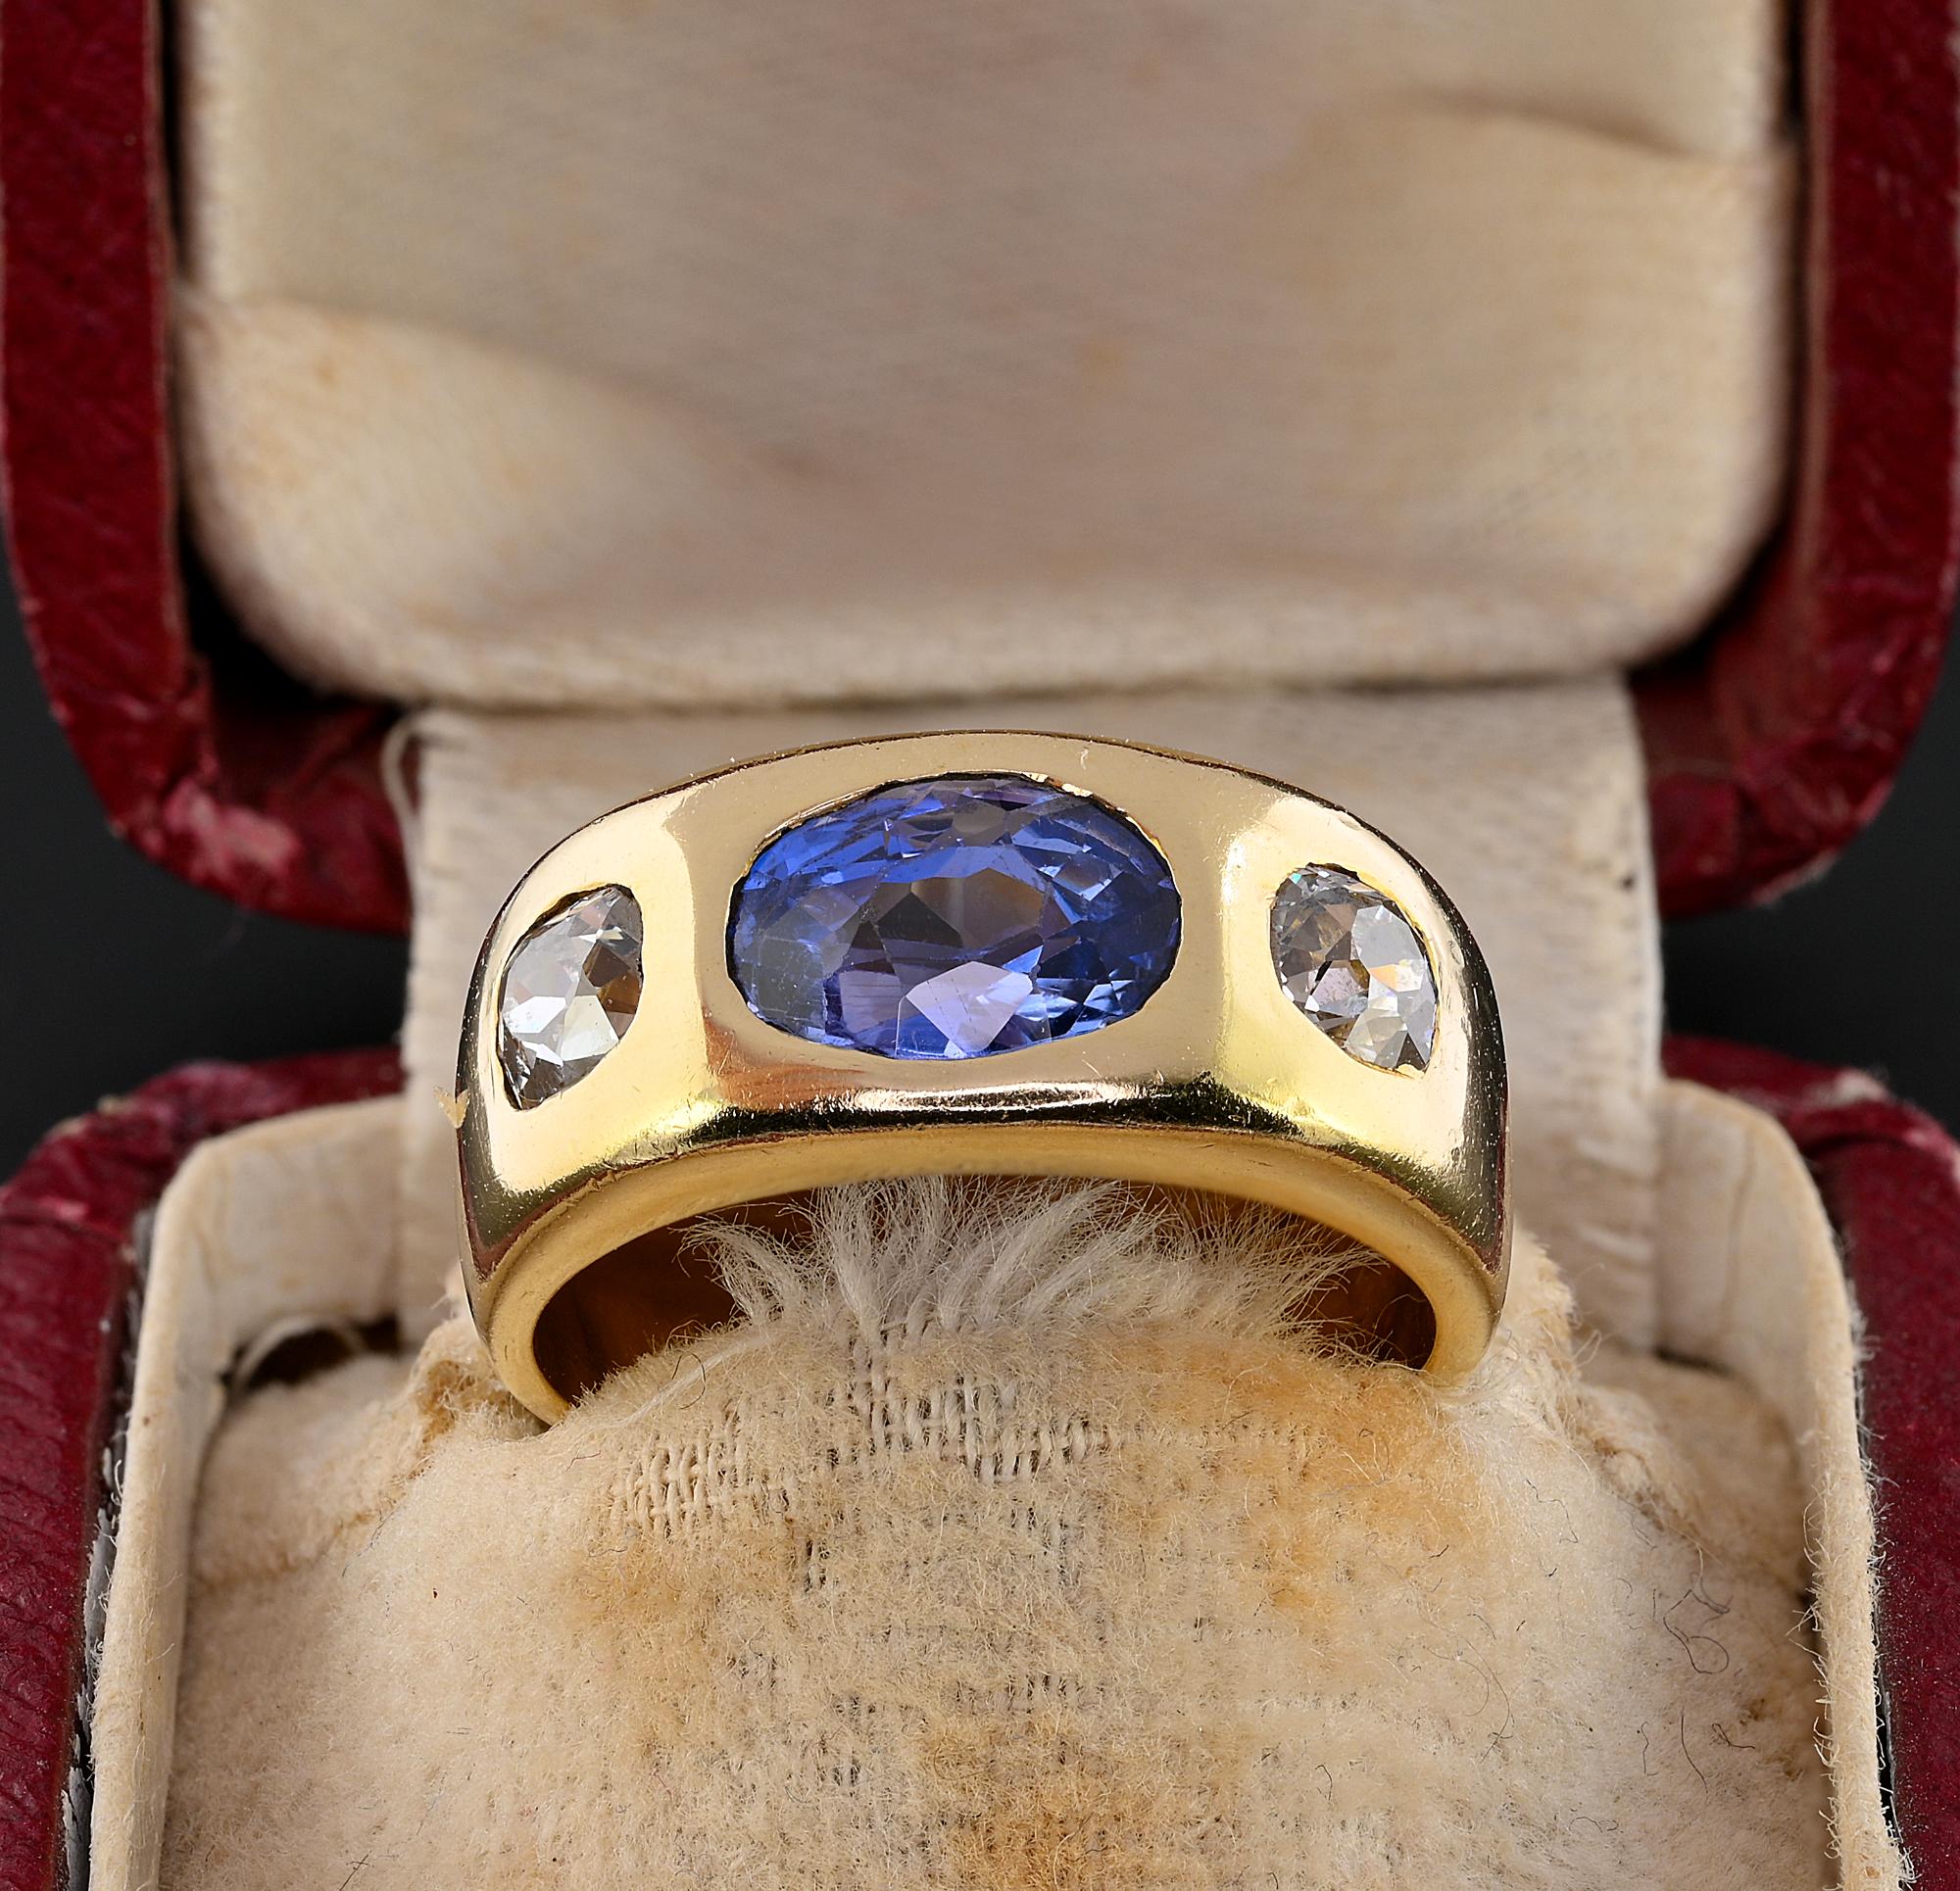 Dieser herausragende antike Ring aus dem Jahr 1930 wurde individuell von Hand aus massivem 18 KT Gold gefertigt.
Es ist ein stilvoller Ring mit drei Steinen, der für beide Geschlechter geeignet ist. Das faszinierende Band zeigt drei Steine nach